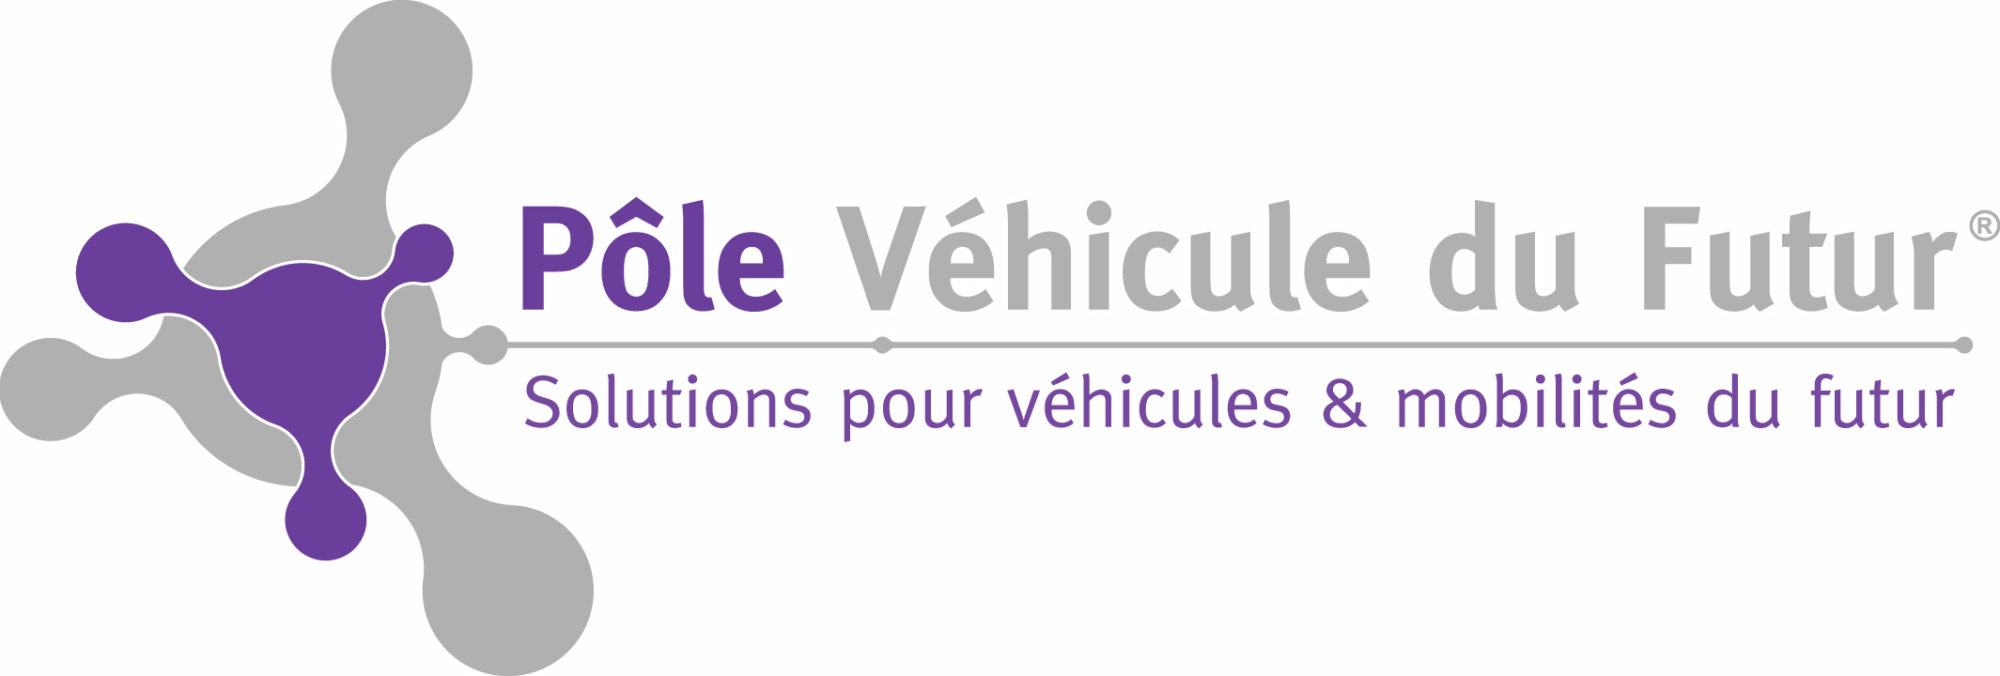 Logo_Pole_Vehicule_Futur